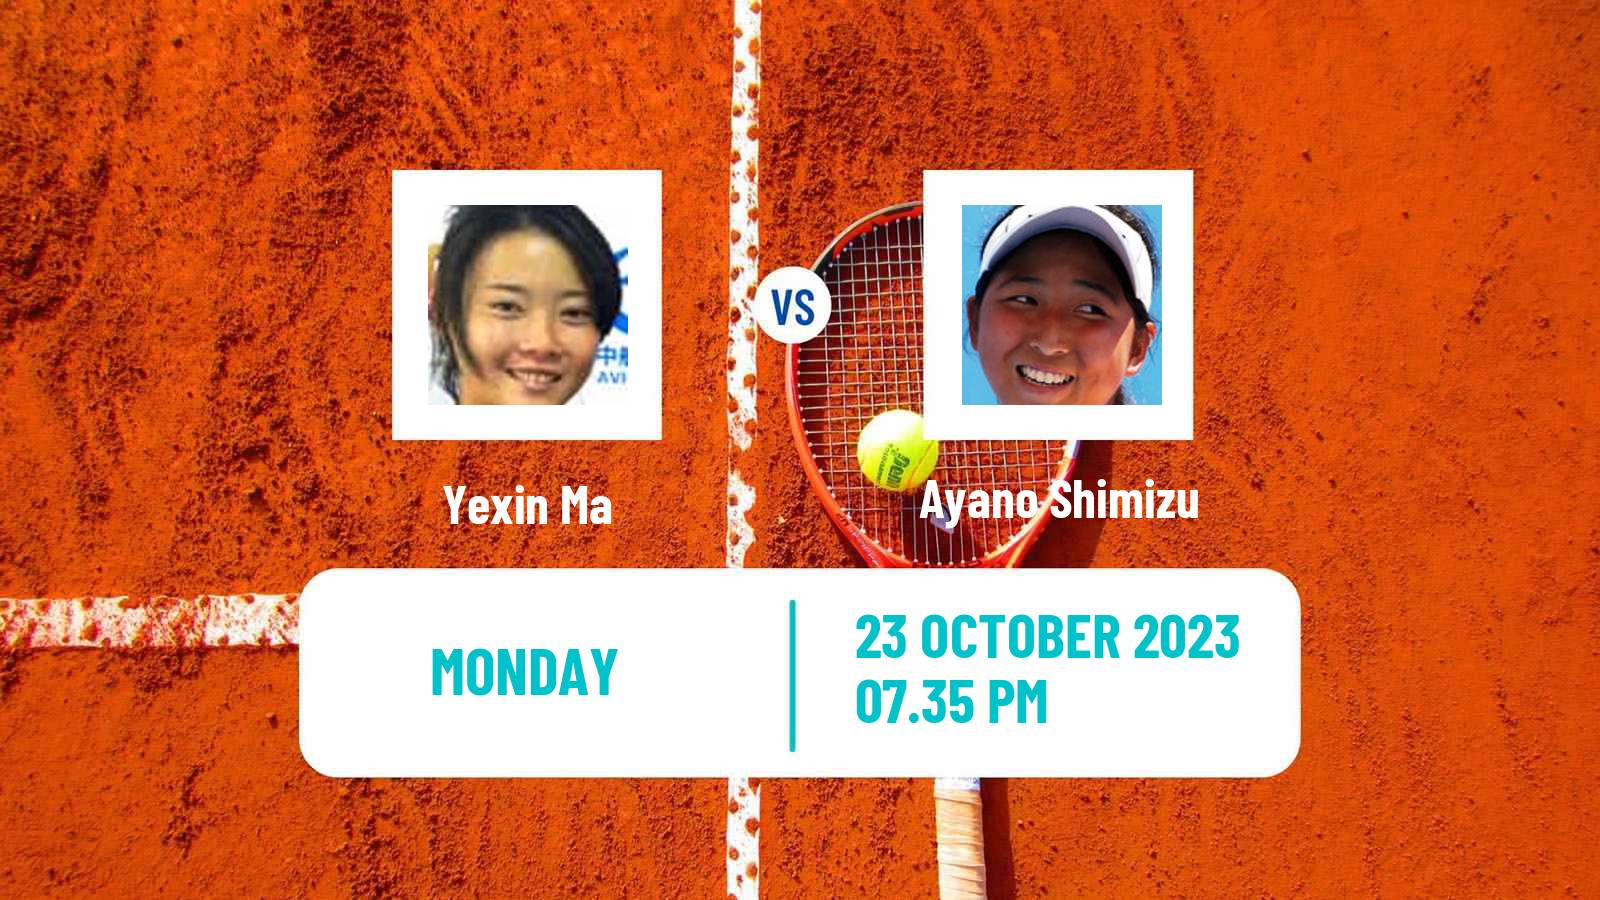 Tennis ITF W60 Playford Women 2023 Yexin Ma - Ayano Shimizu